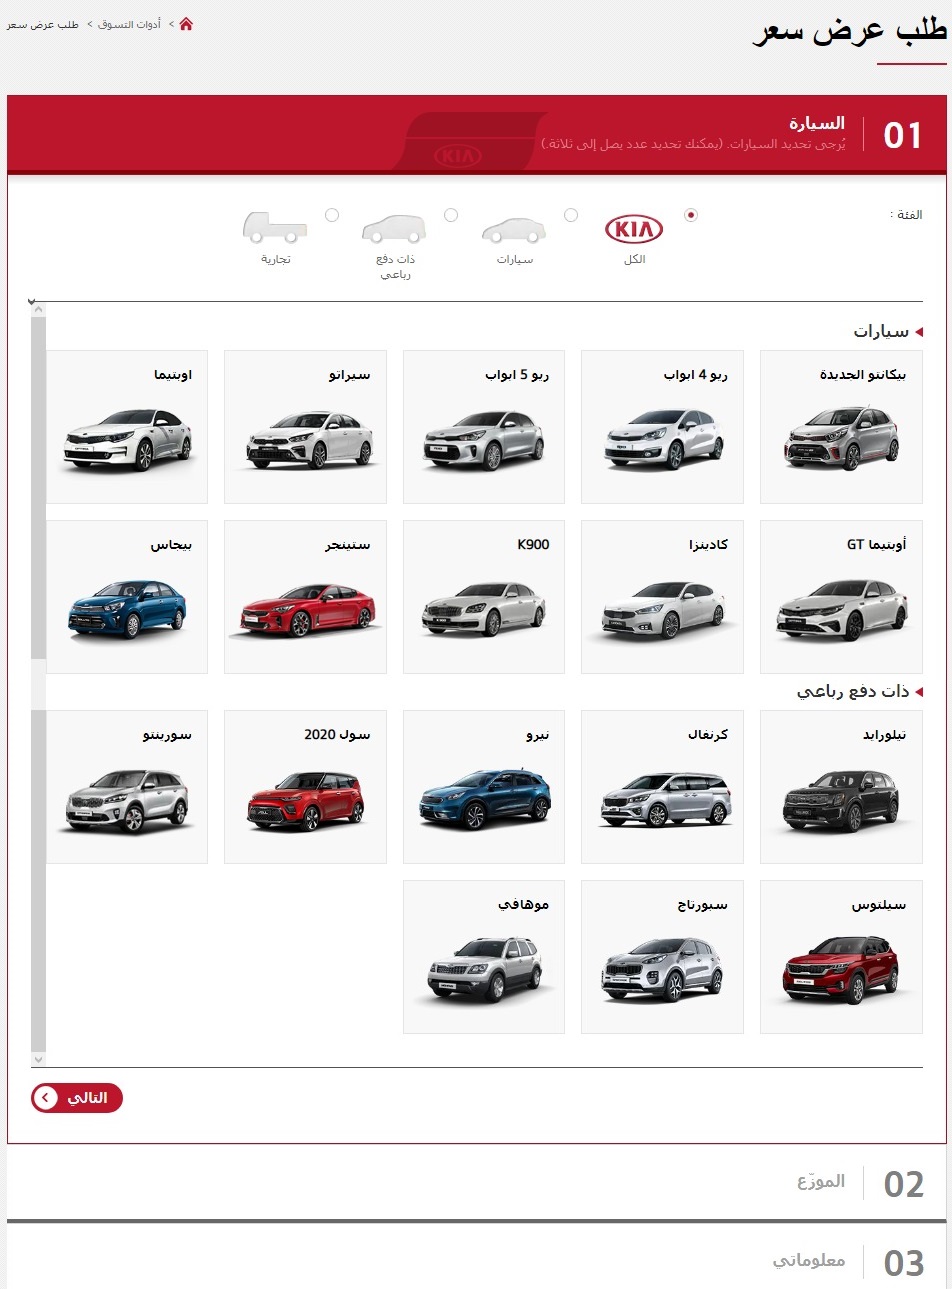 "بالصور" كيا الجبر تتيح شراء السيارات عبر الإنترنت 1